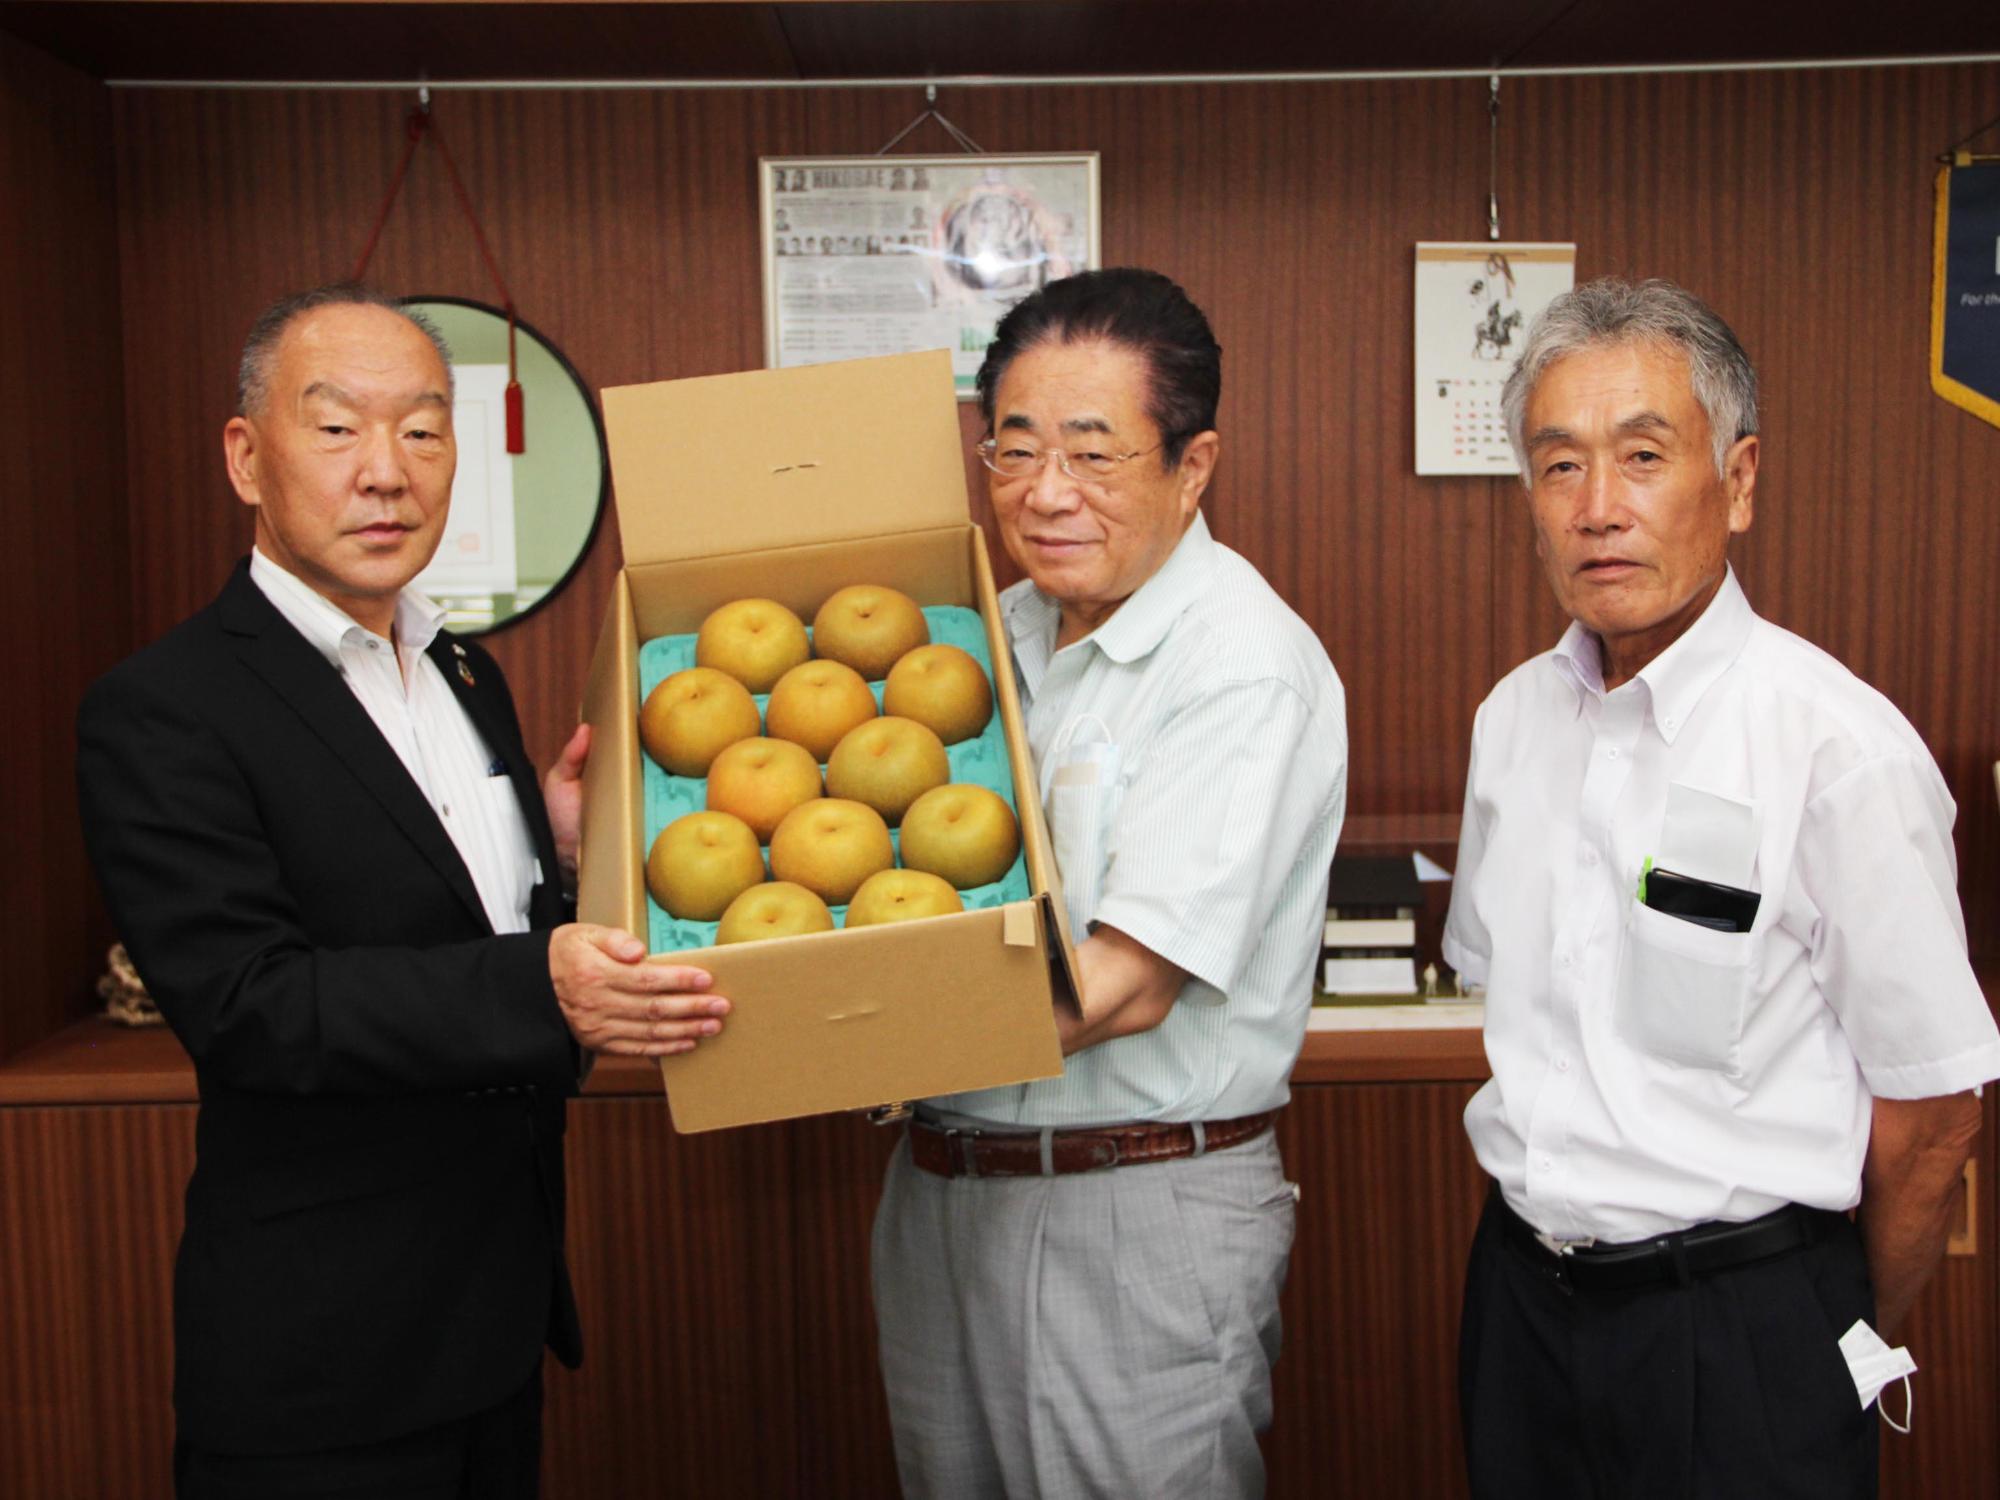 濱田代表理事専務と山田地区役員代表が立谷市長にナシを贈呈する様子